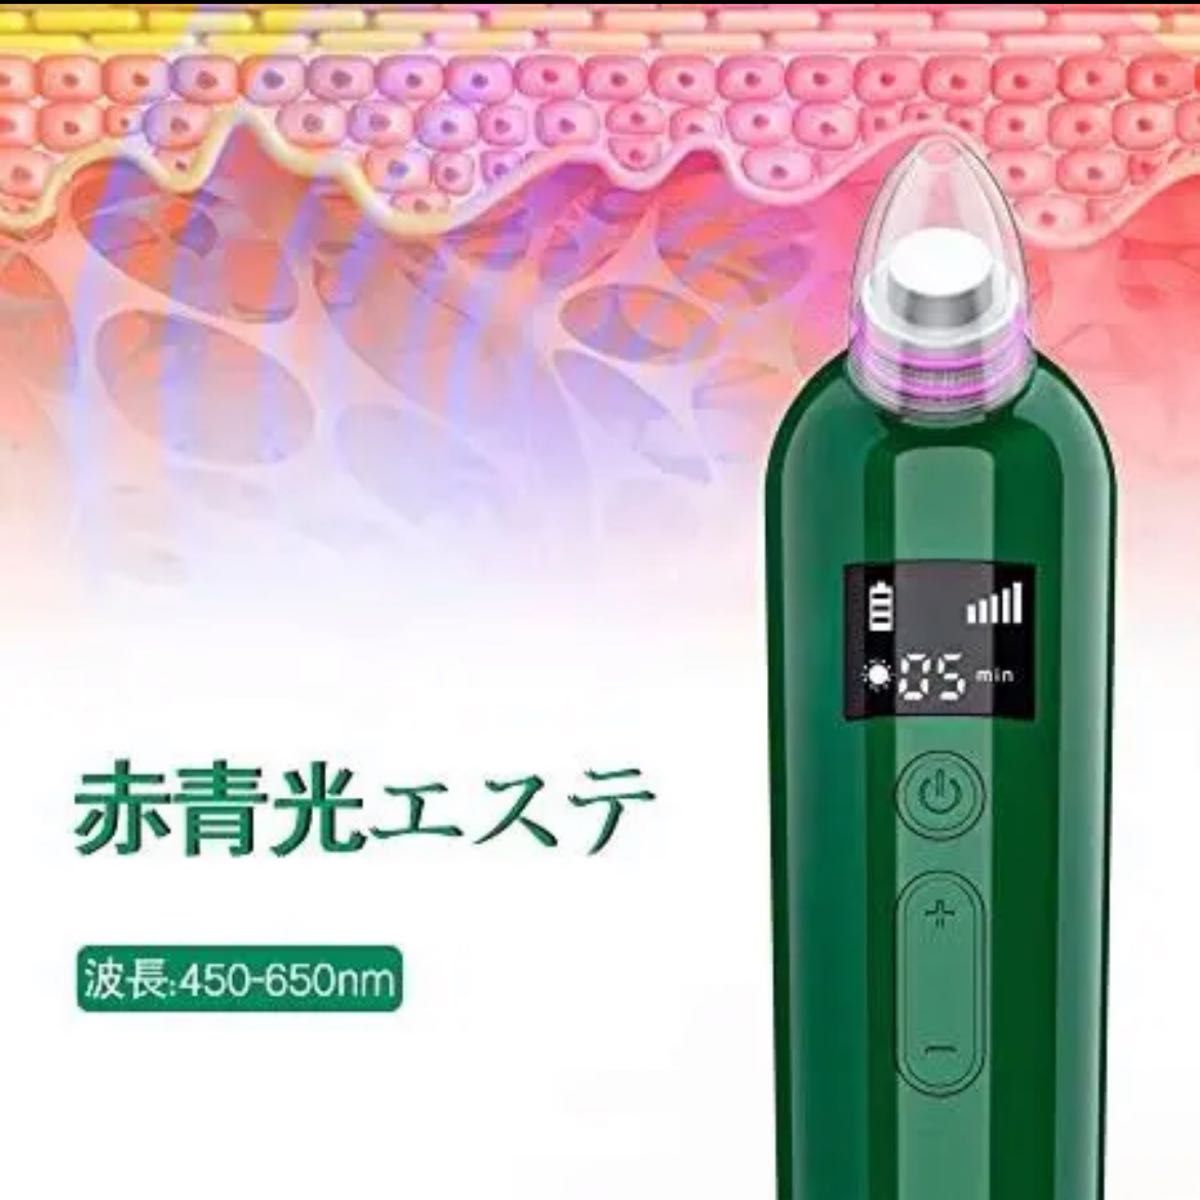 毛穴吸引器 美顔器 5階段吸引力 日本語説明書付き 男女兼用